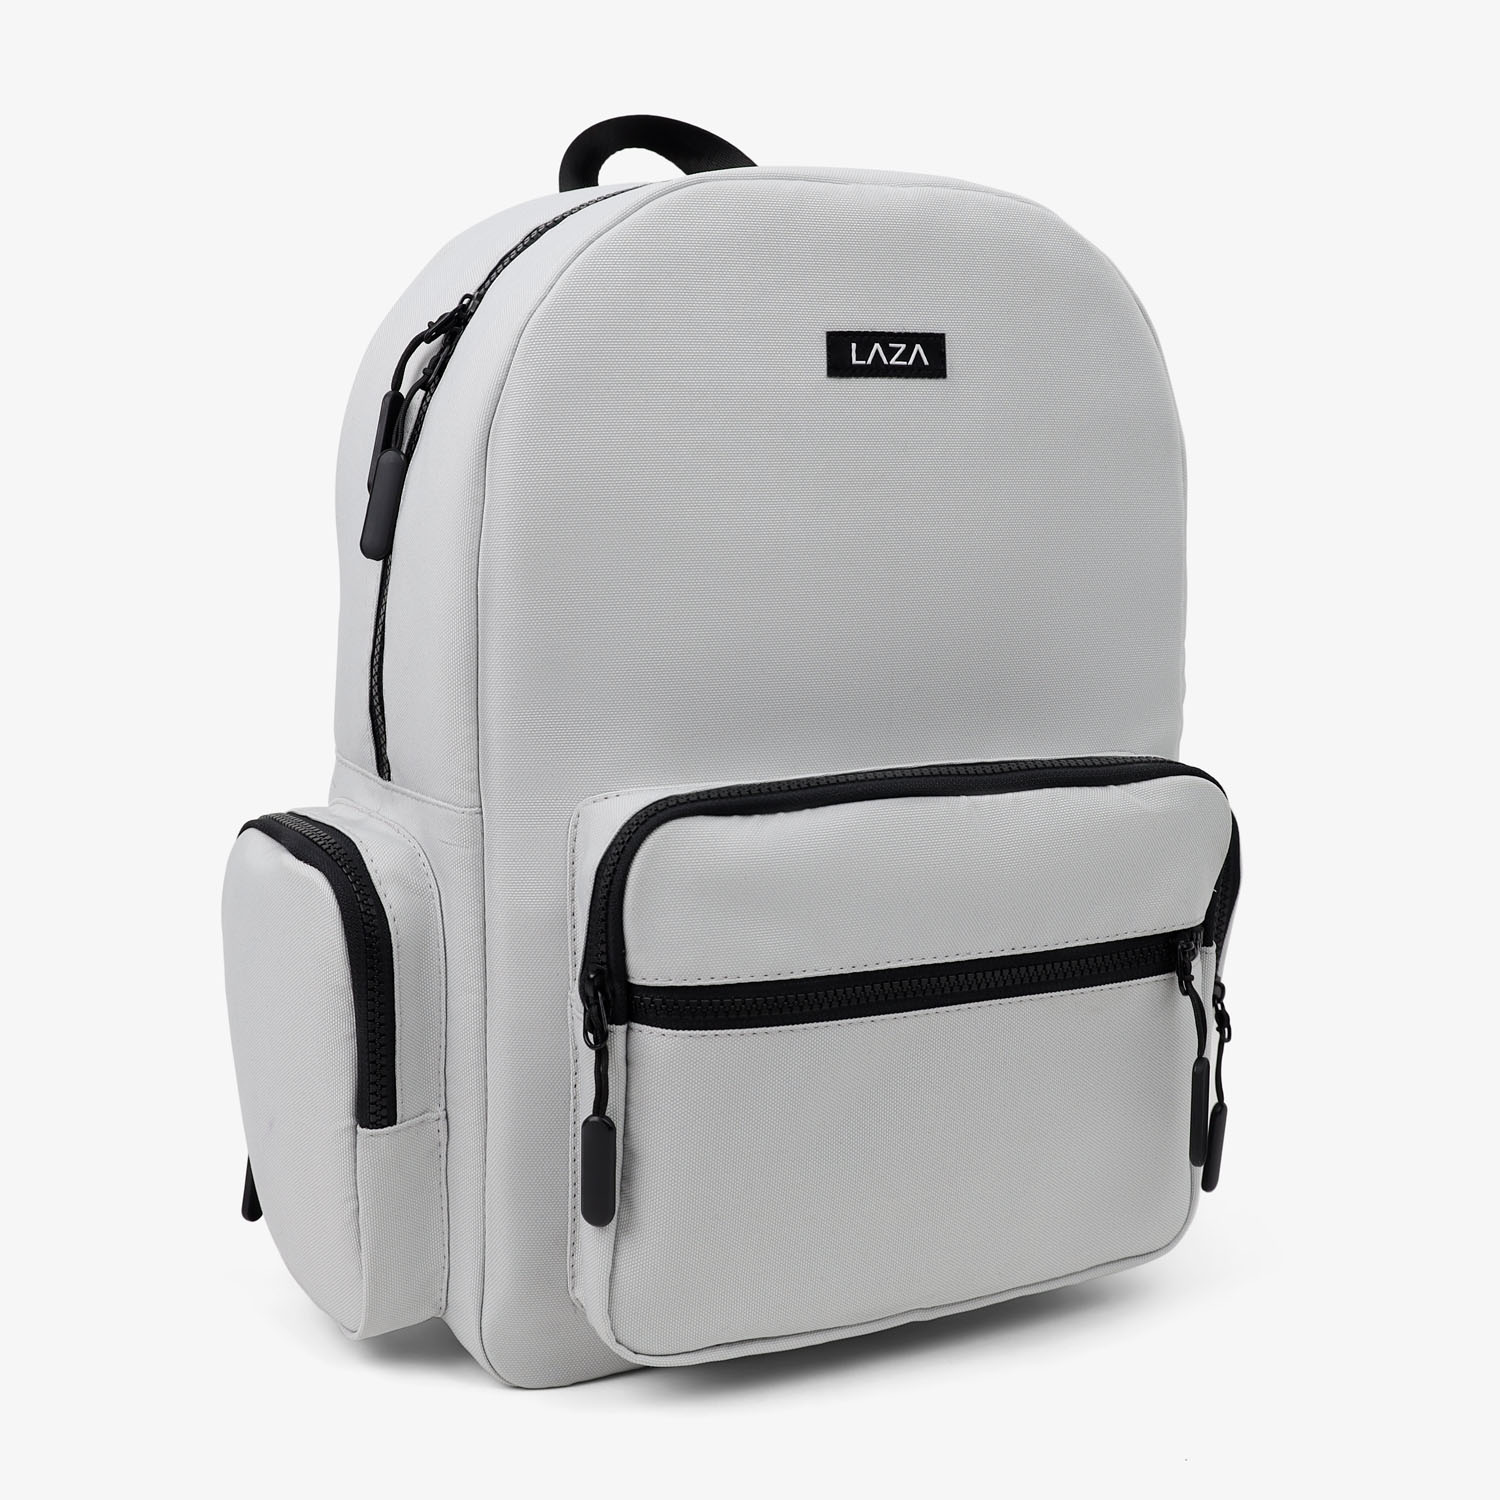 Balo túi hộp LAZA Catse Backpack BL580 vải canvas trượt nước, chứa được laptop 15.6in, bảo hành trọn đời